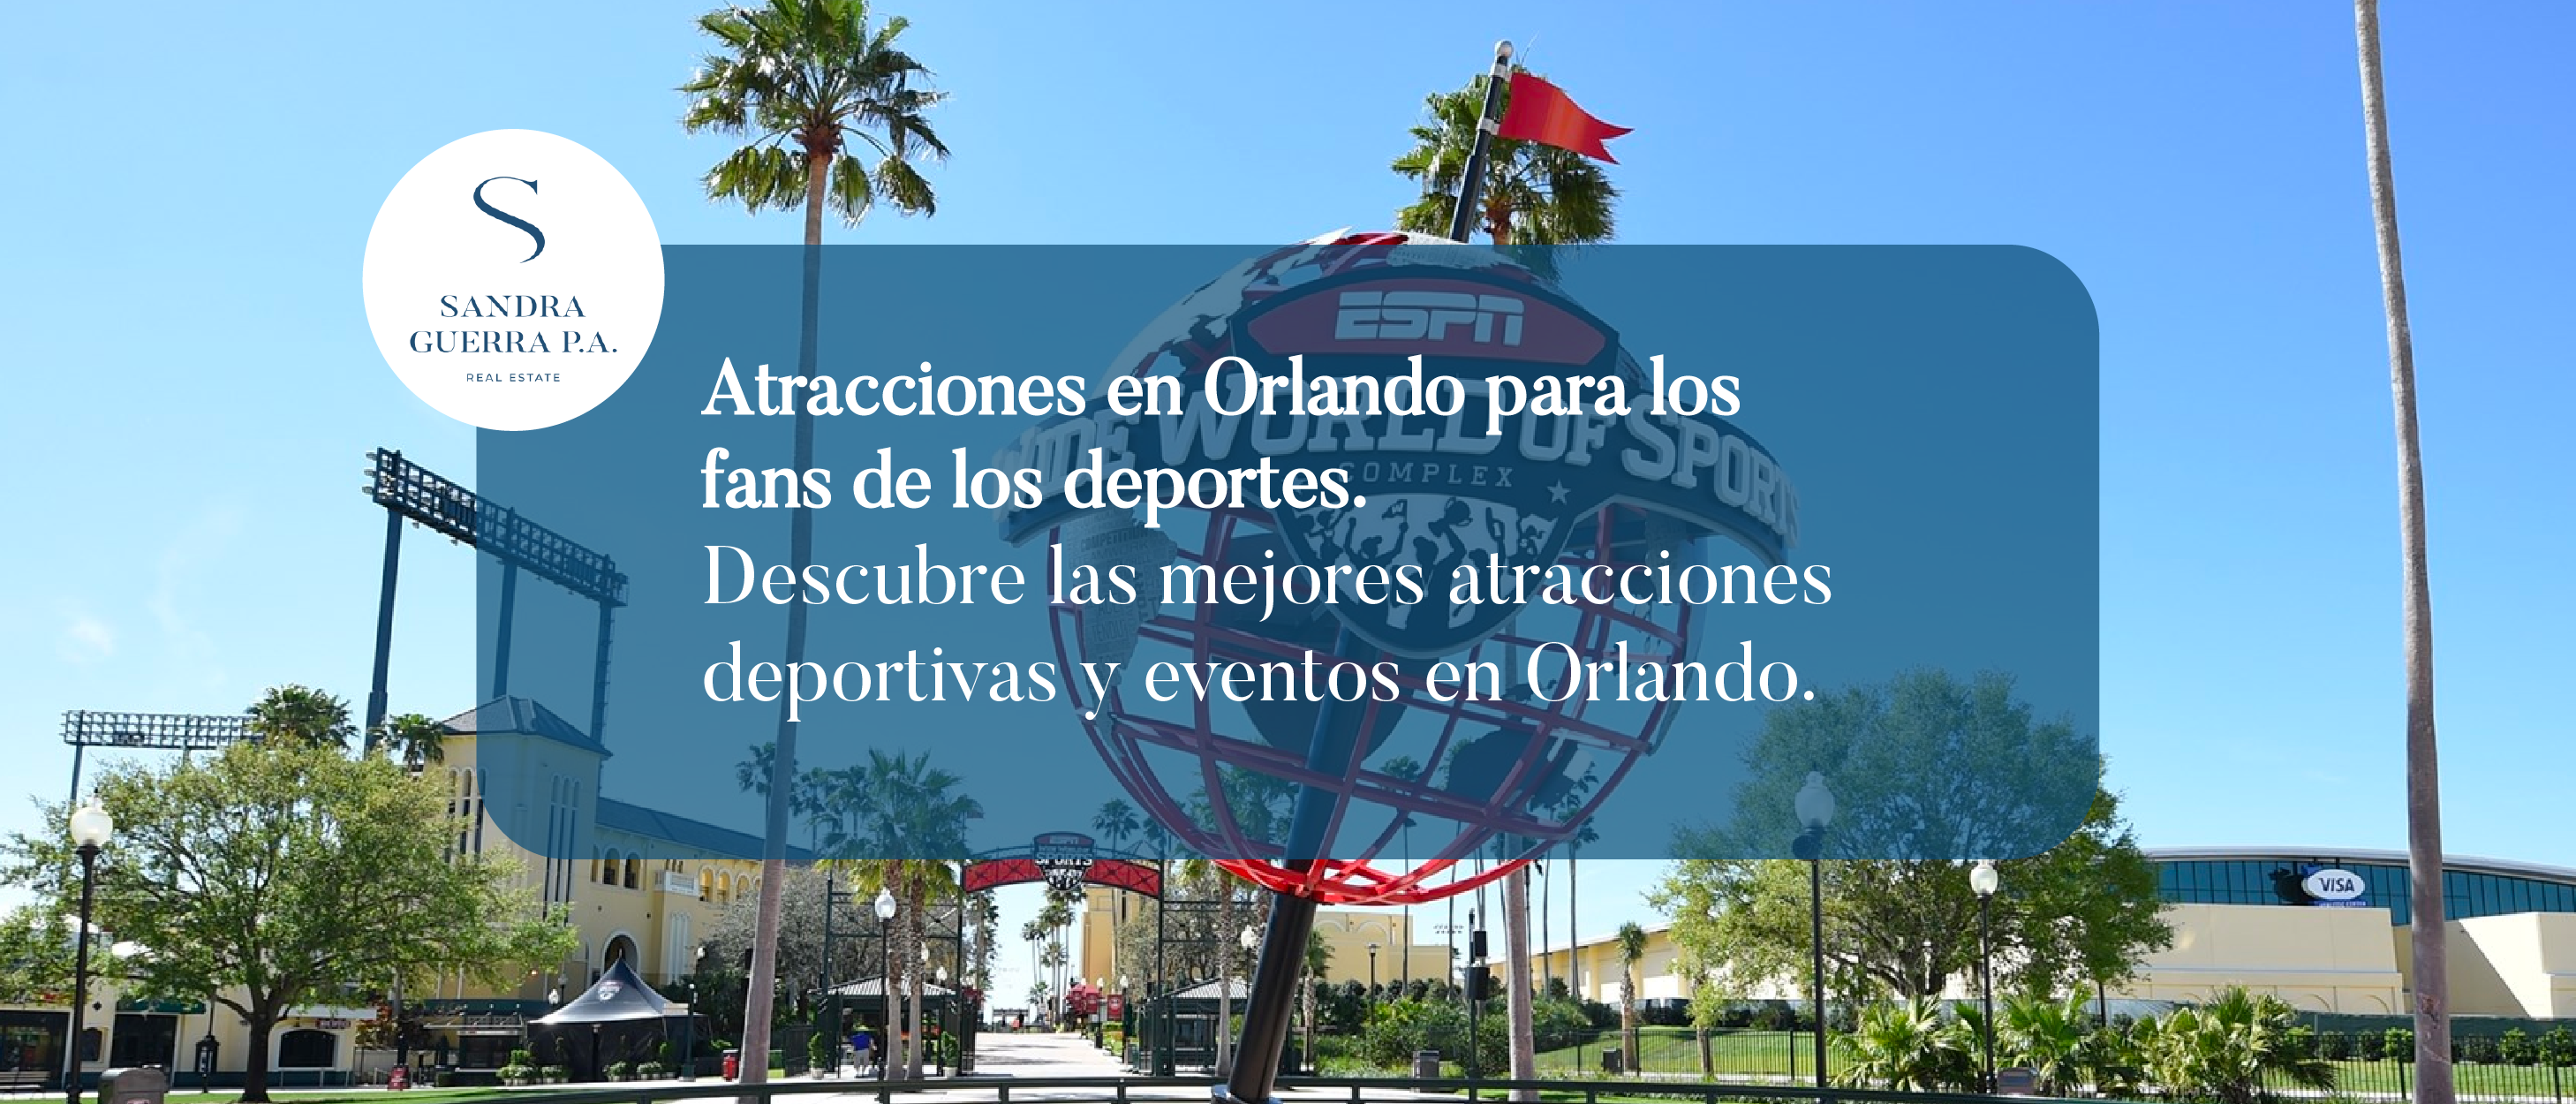 Atracciones en Orlando para los fans de los deportes. Descubre las mejores atracciones deportivas y eventos en Orlando